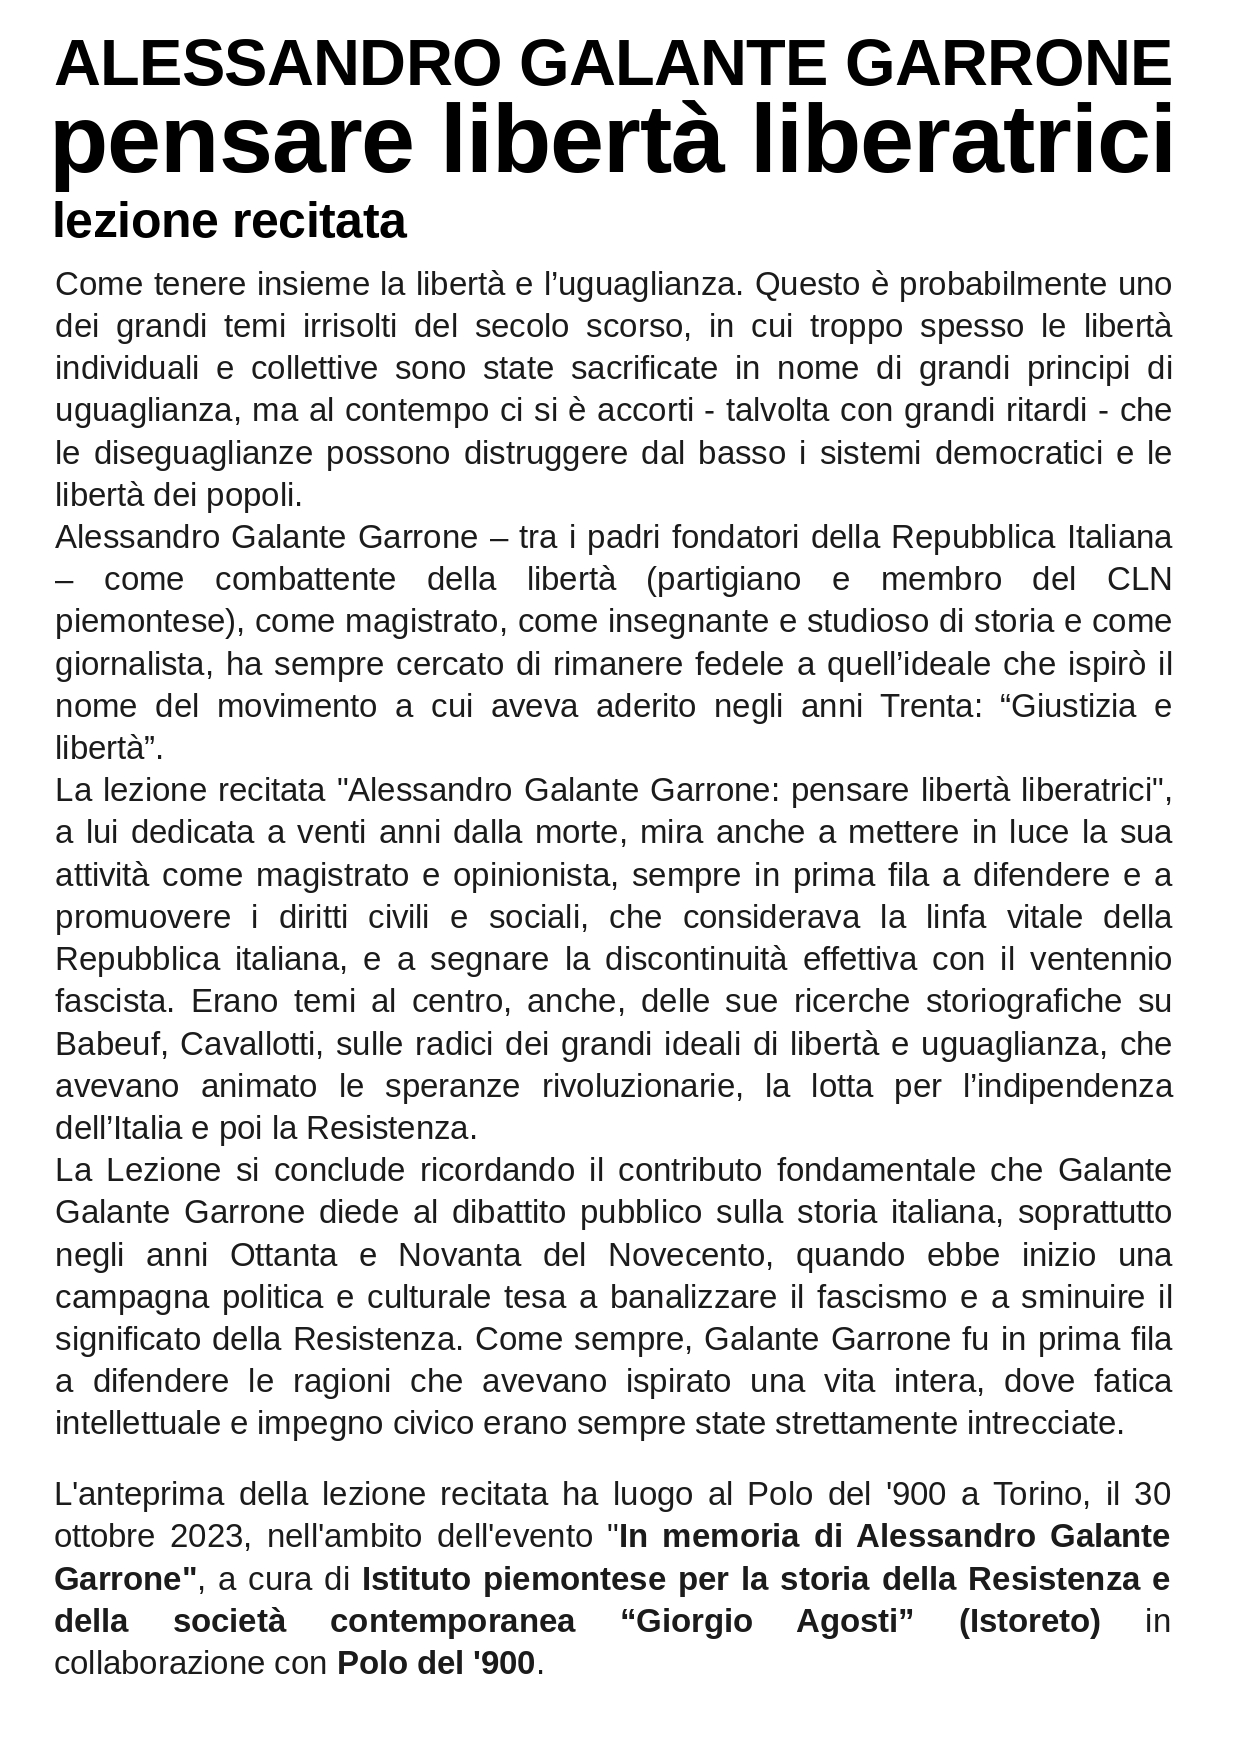 bozza_OPUSC_Alessandro Galante Garrone, pensa re libertà liberatrici - lezione recitata_page-0002